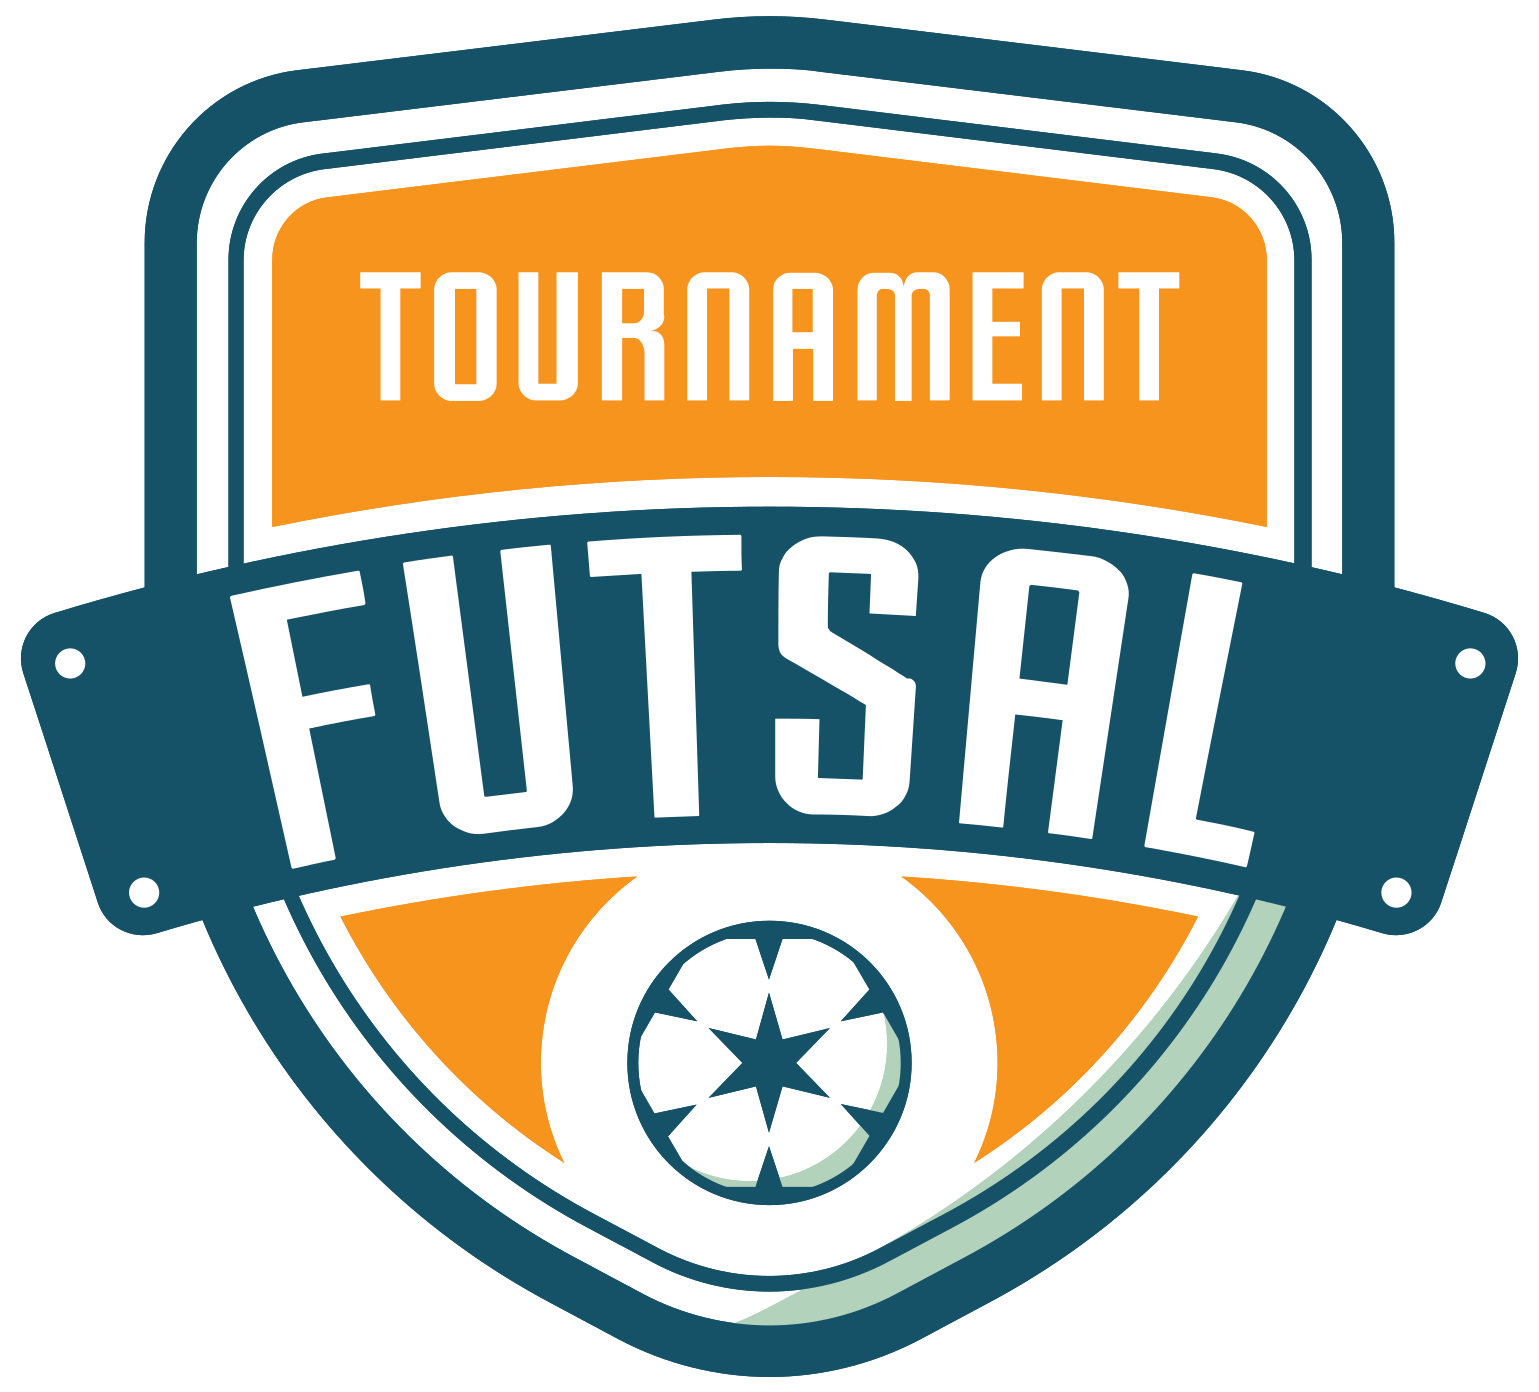 Logo Esport Png Mentahan Sertifikat Futsal - IMAGESEE